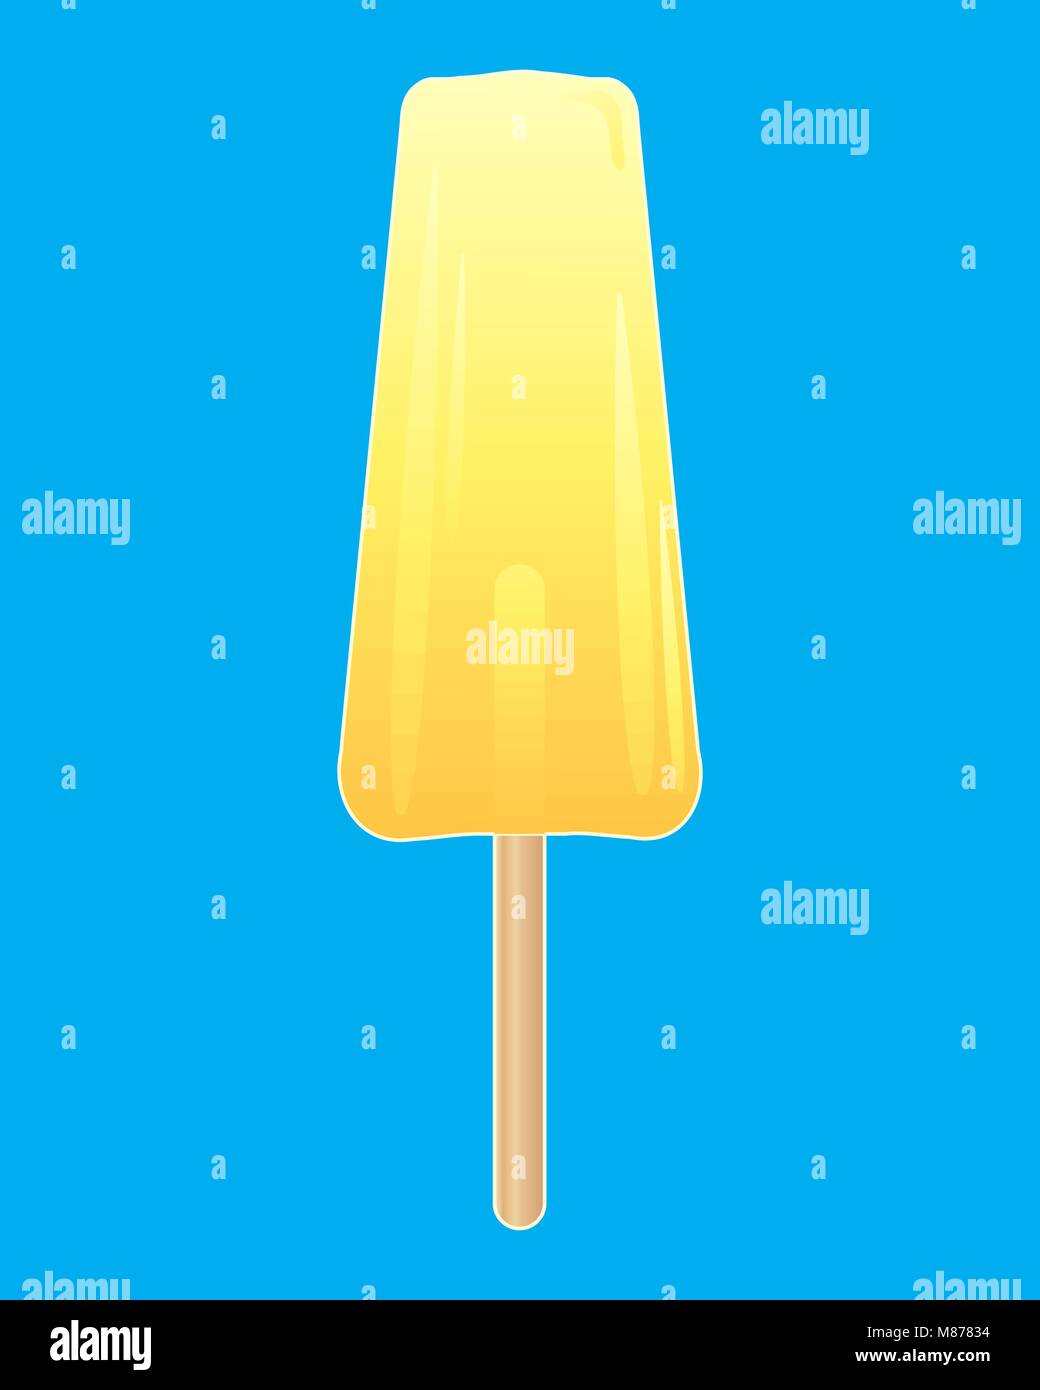 Un vecteur illustration en eps 10 format d'une sucette glace jaune vif avec un bâton sur un fond bleu turquoise Illustration de Vecteur